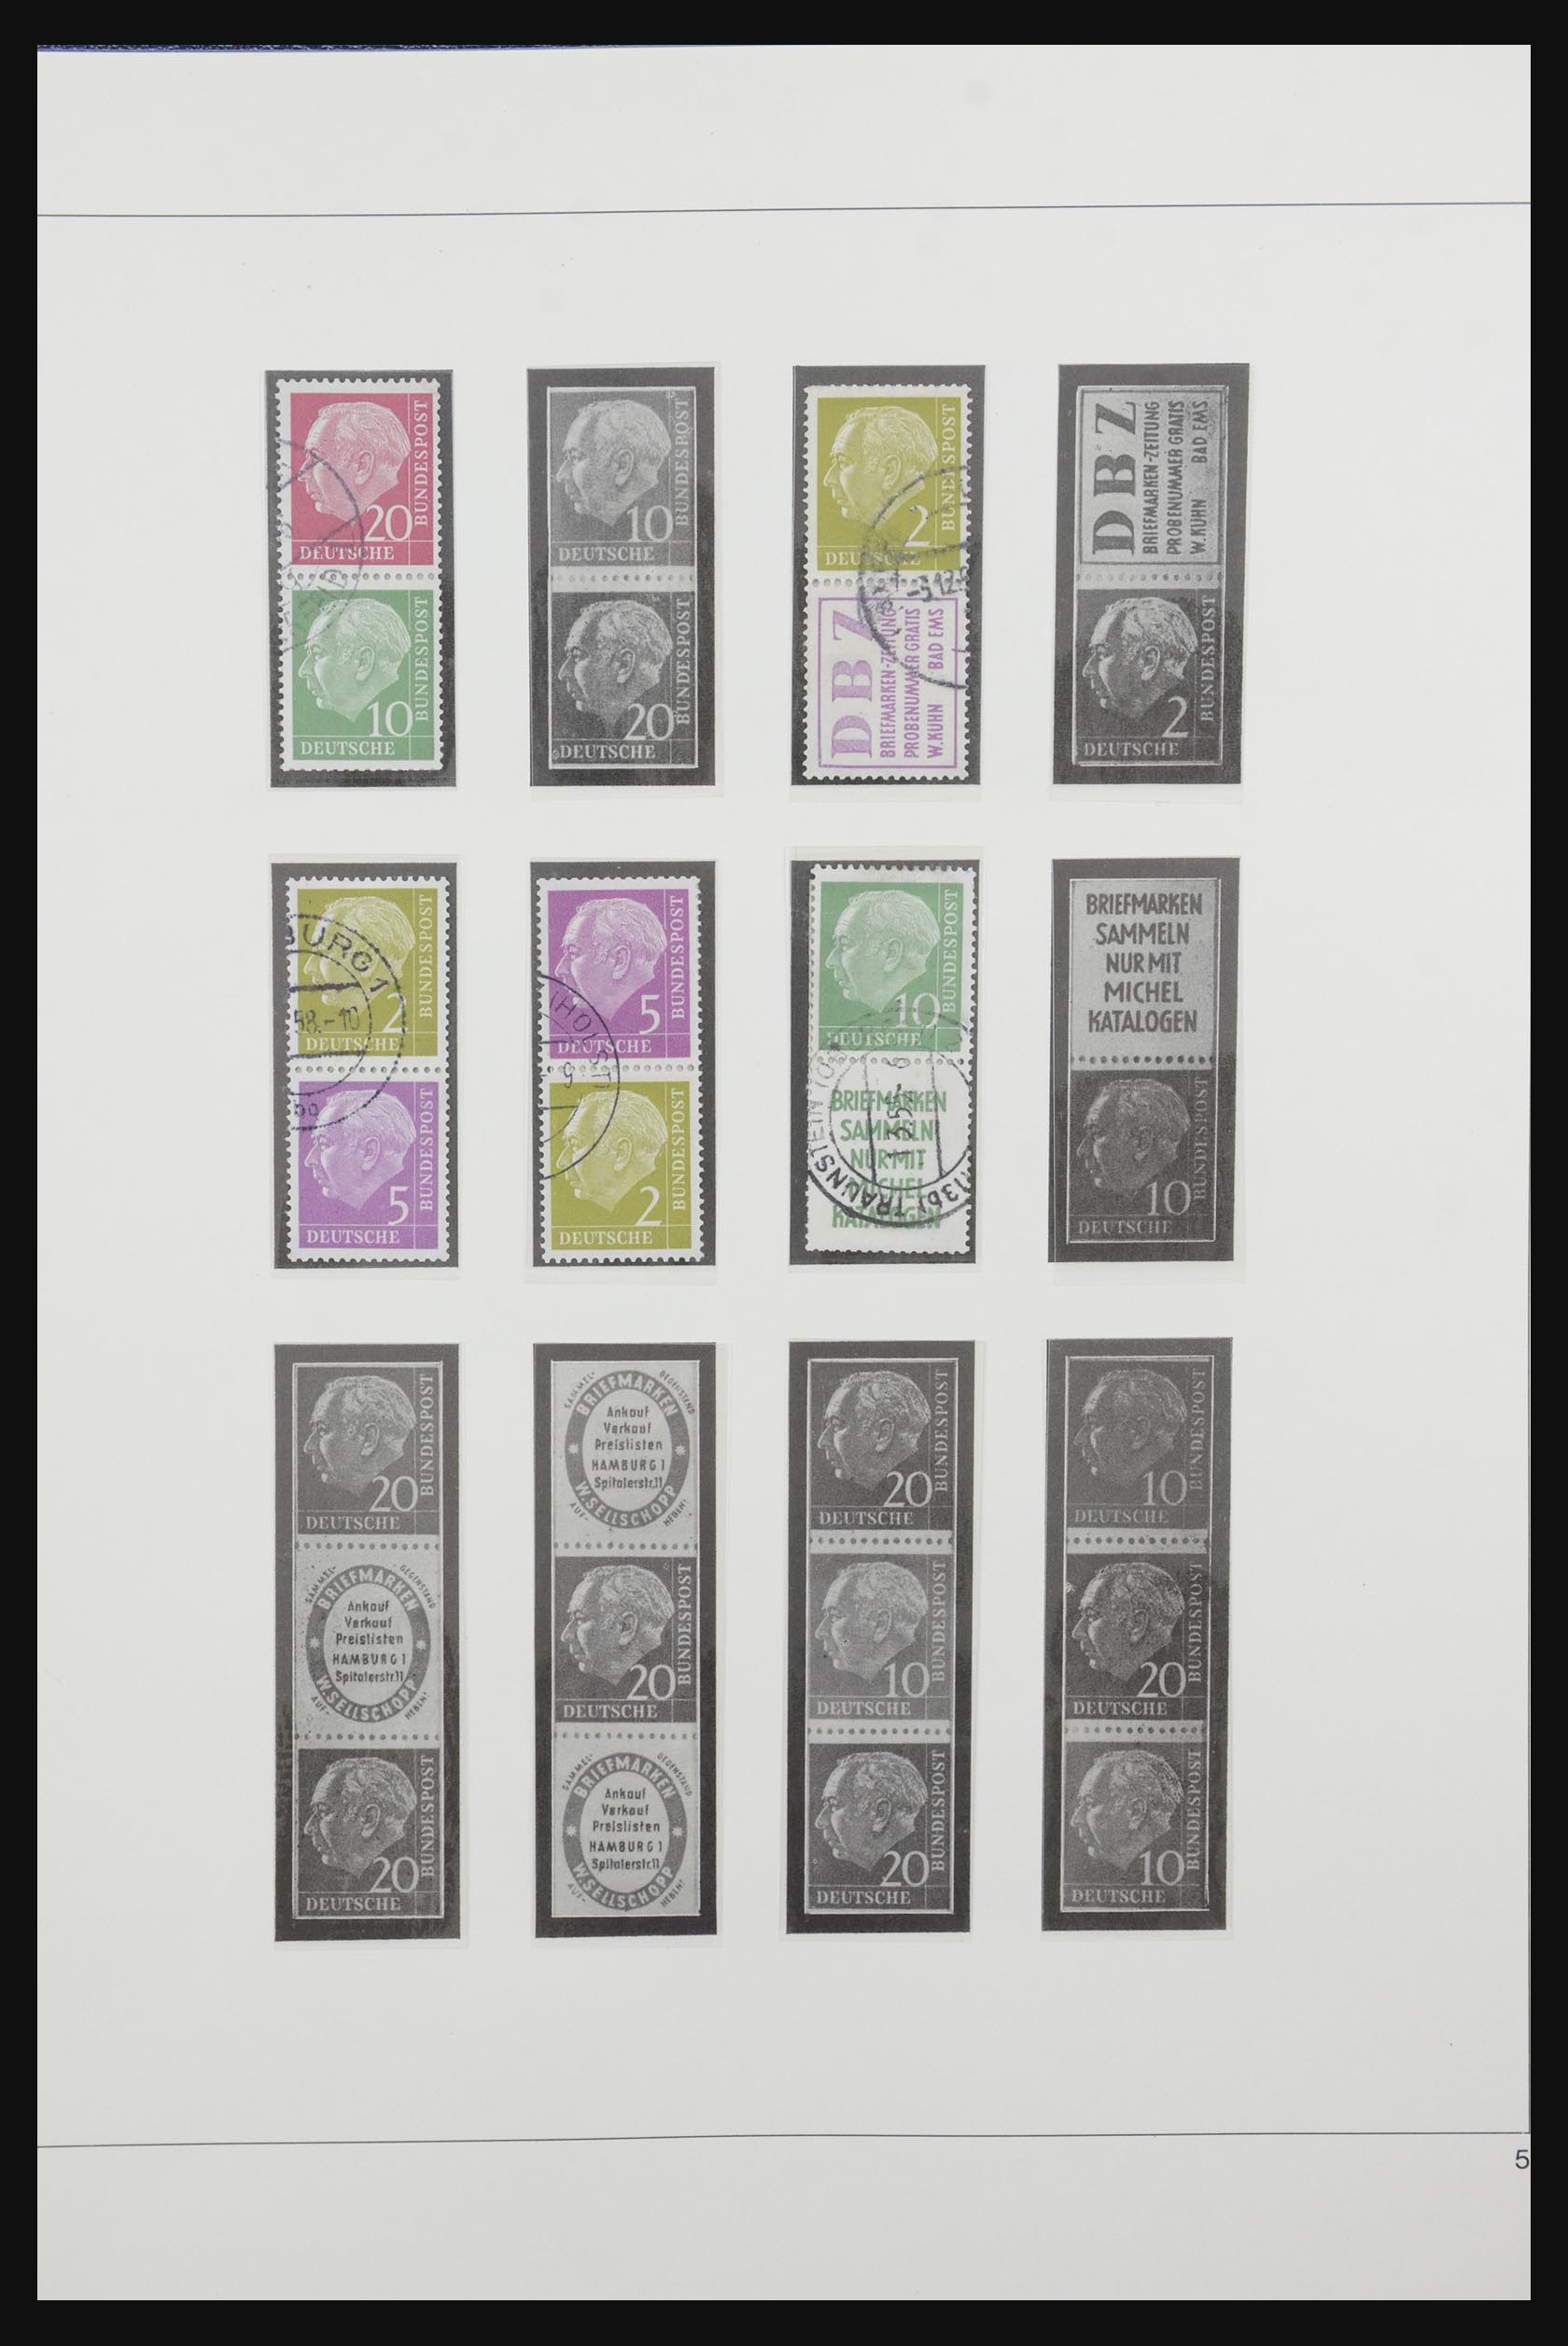 31842 006 - 31842 Bundespost combinations 1951-2003.